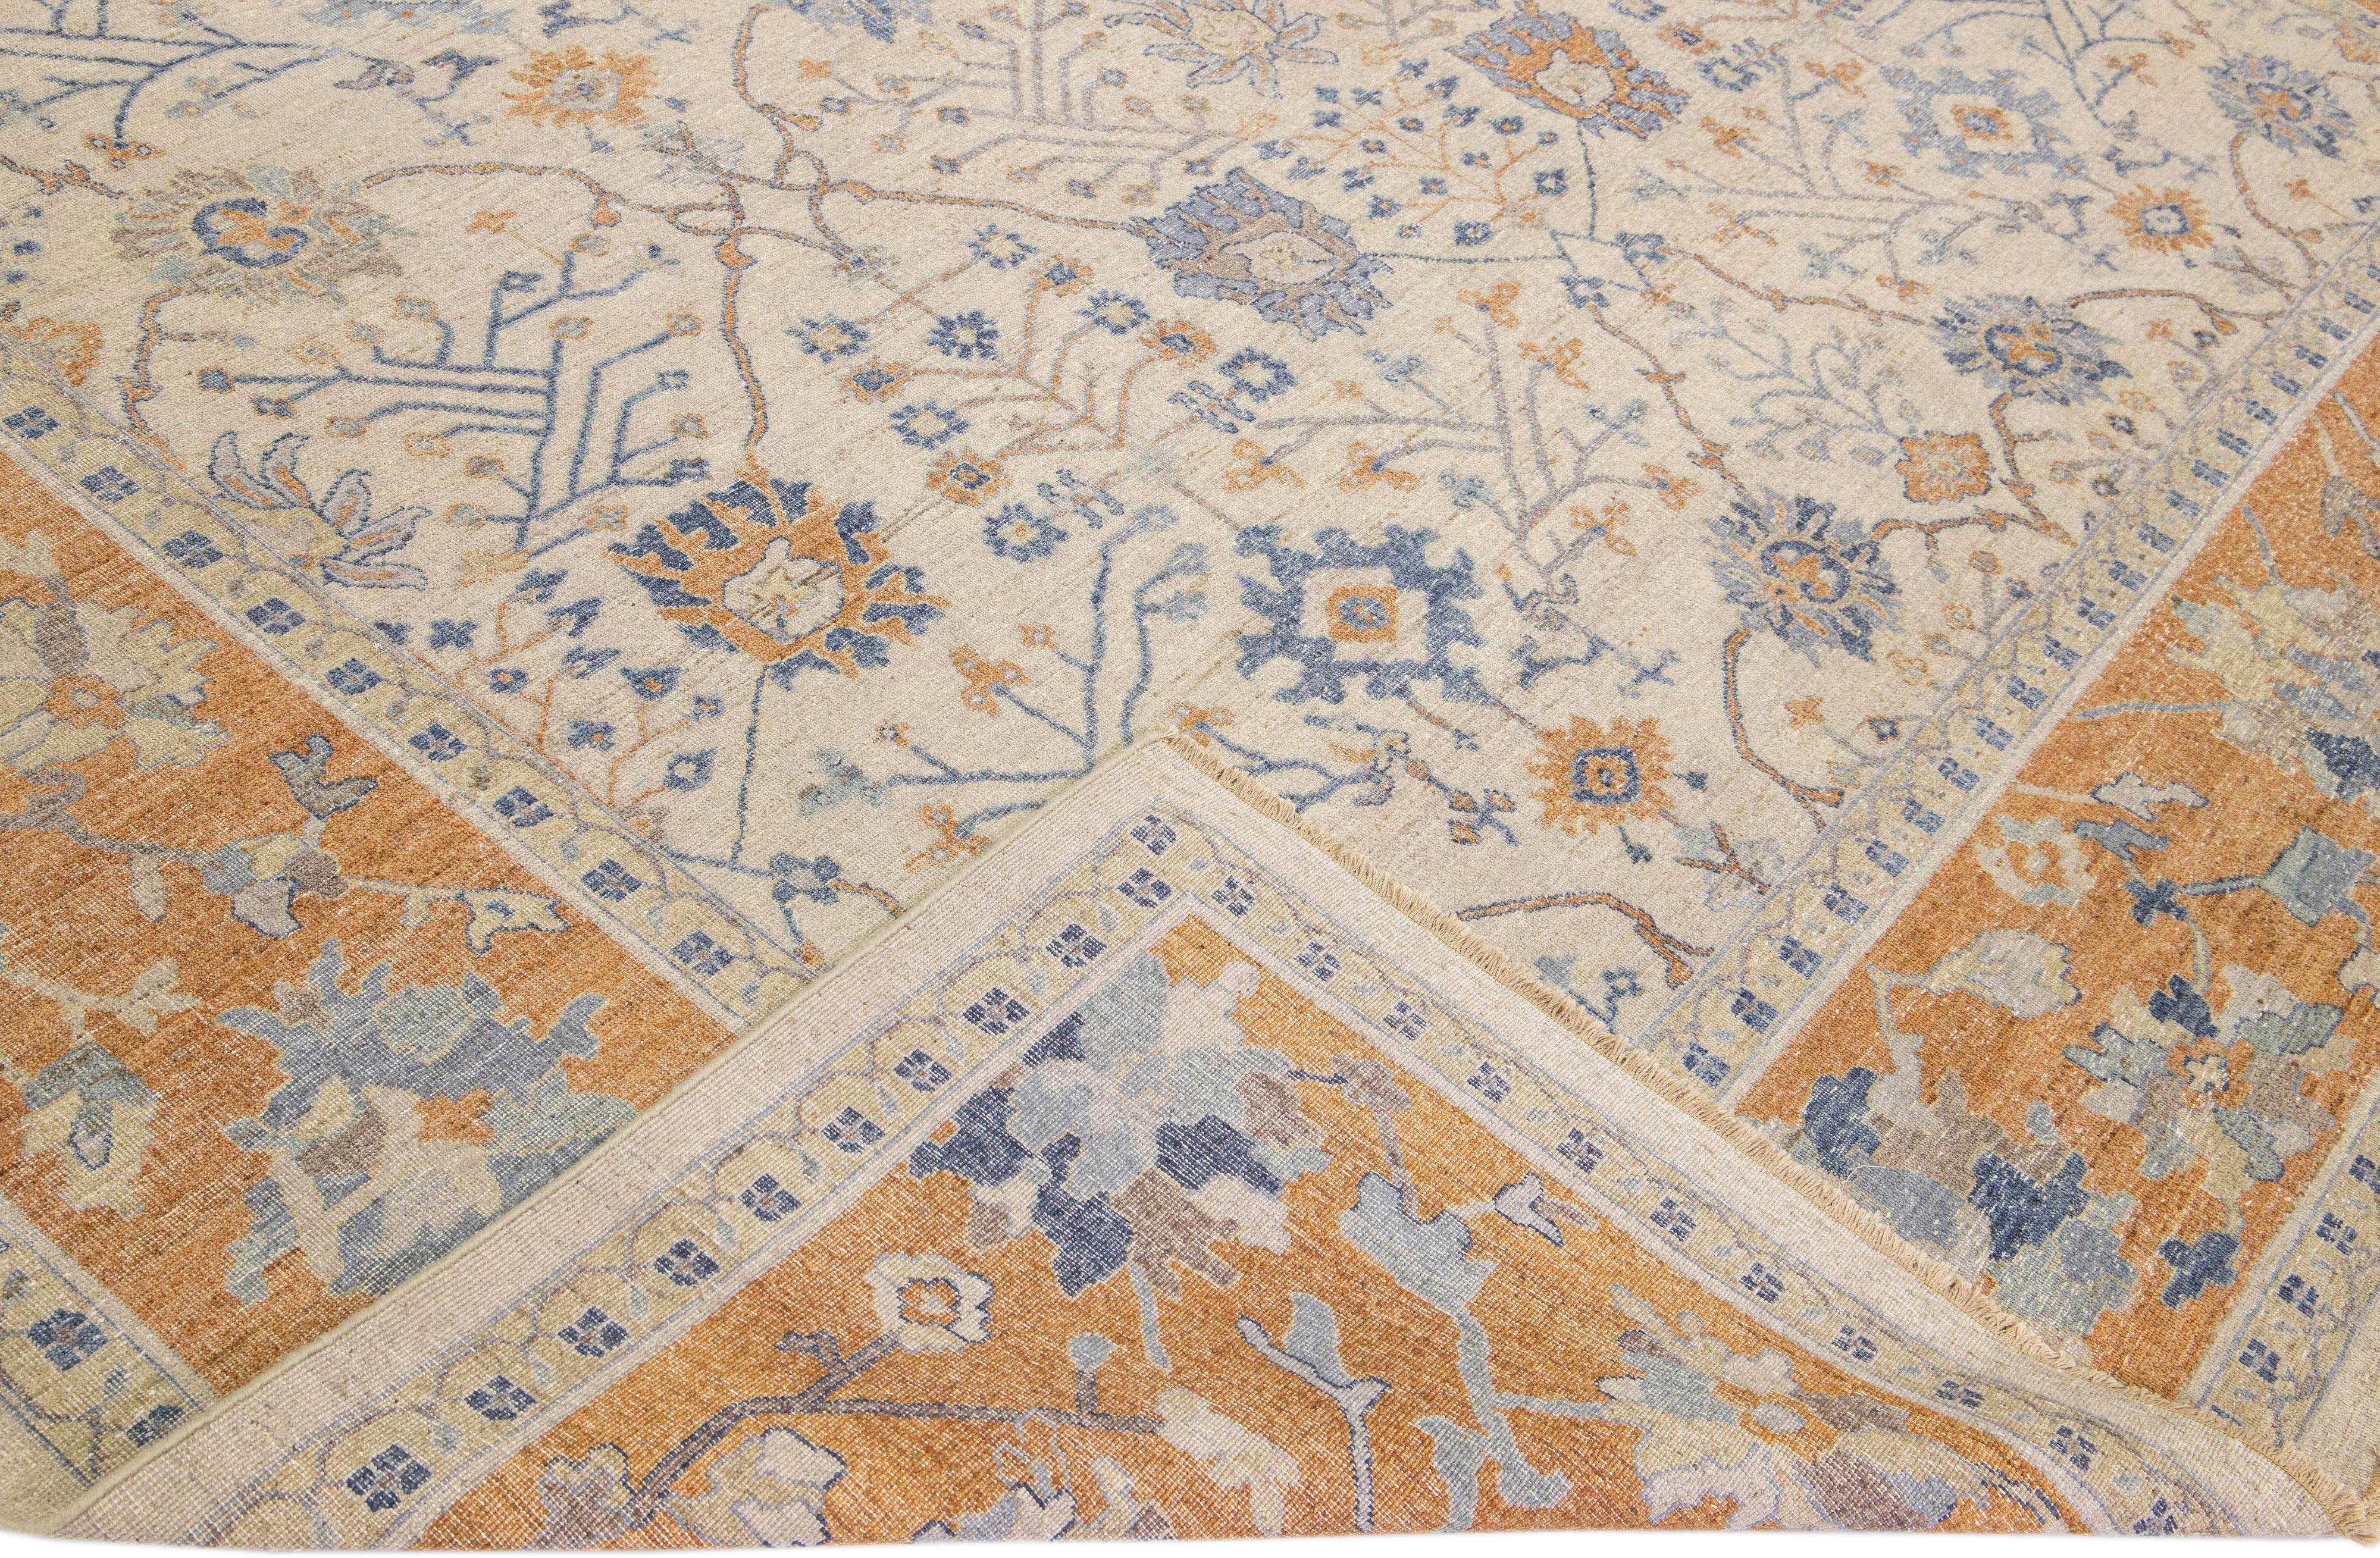 Die Artisan-Linie von Apadana ist eine elegante Möglichkeit, einem Raum eine auffallend antike Ästhetik zu verleihen. Diese Teppichserie ist ausgesprochen einzigartig und definiert das Aussehen eines antiken Teppichs neu. Jedes einzelne Stück